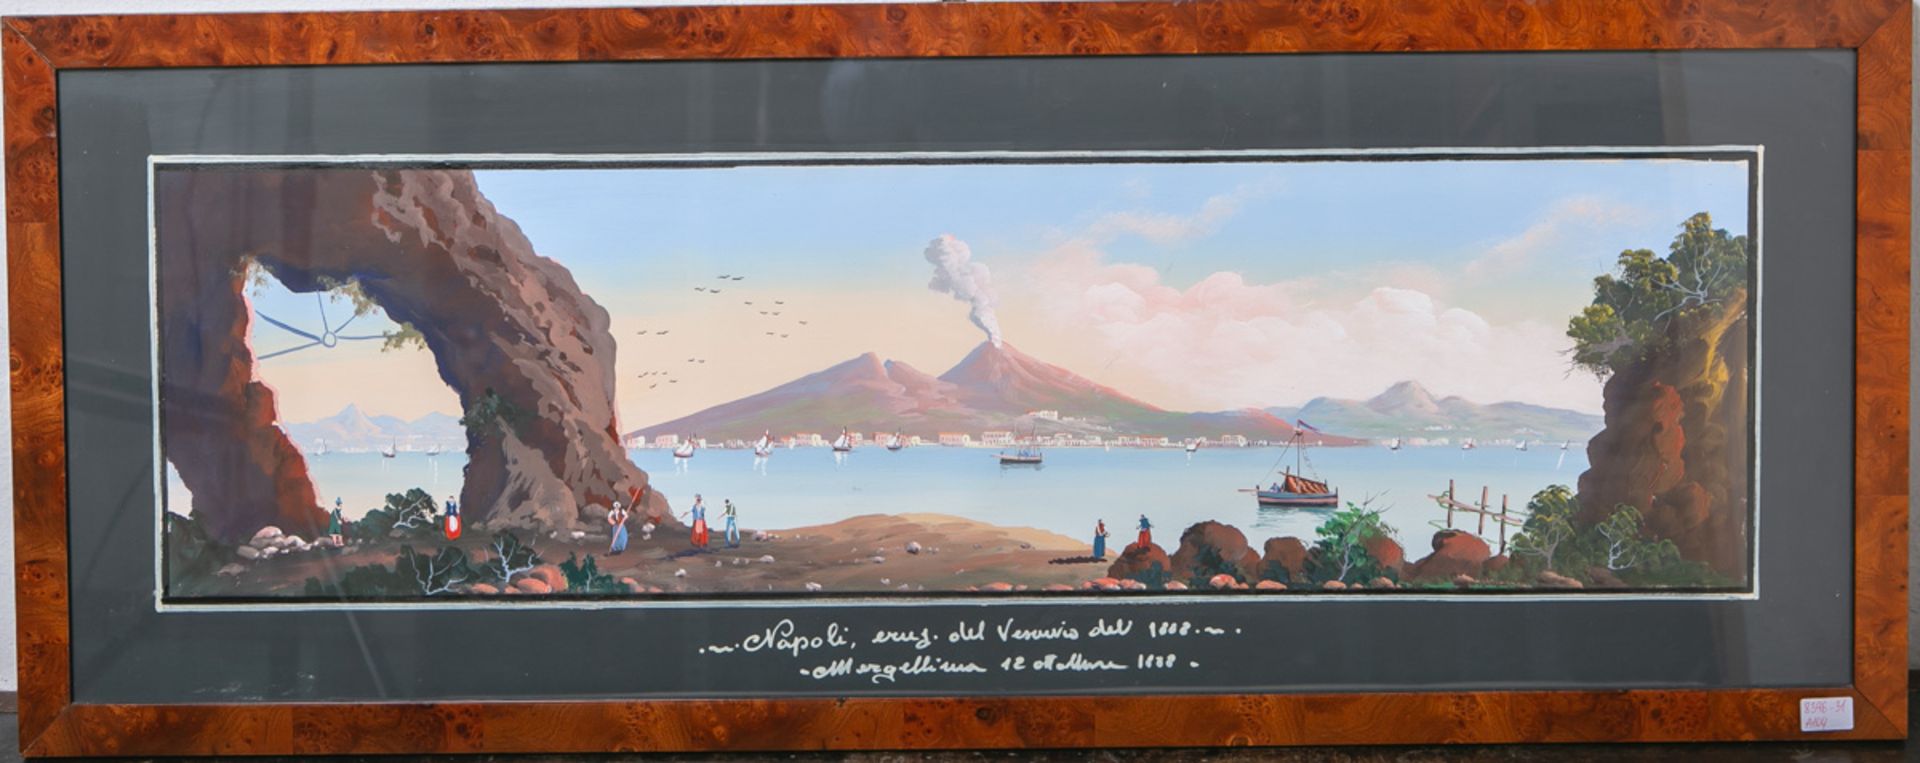 KünstlerIn unbekannt (Italien, 19. Jh.), "Napoli, eruz. del Vesuvio del. 1882"